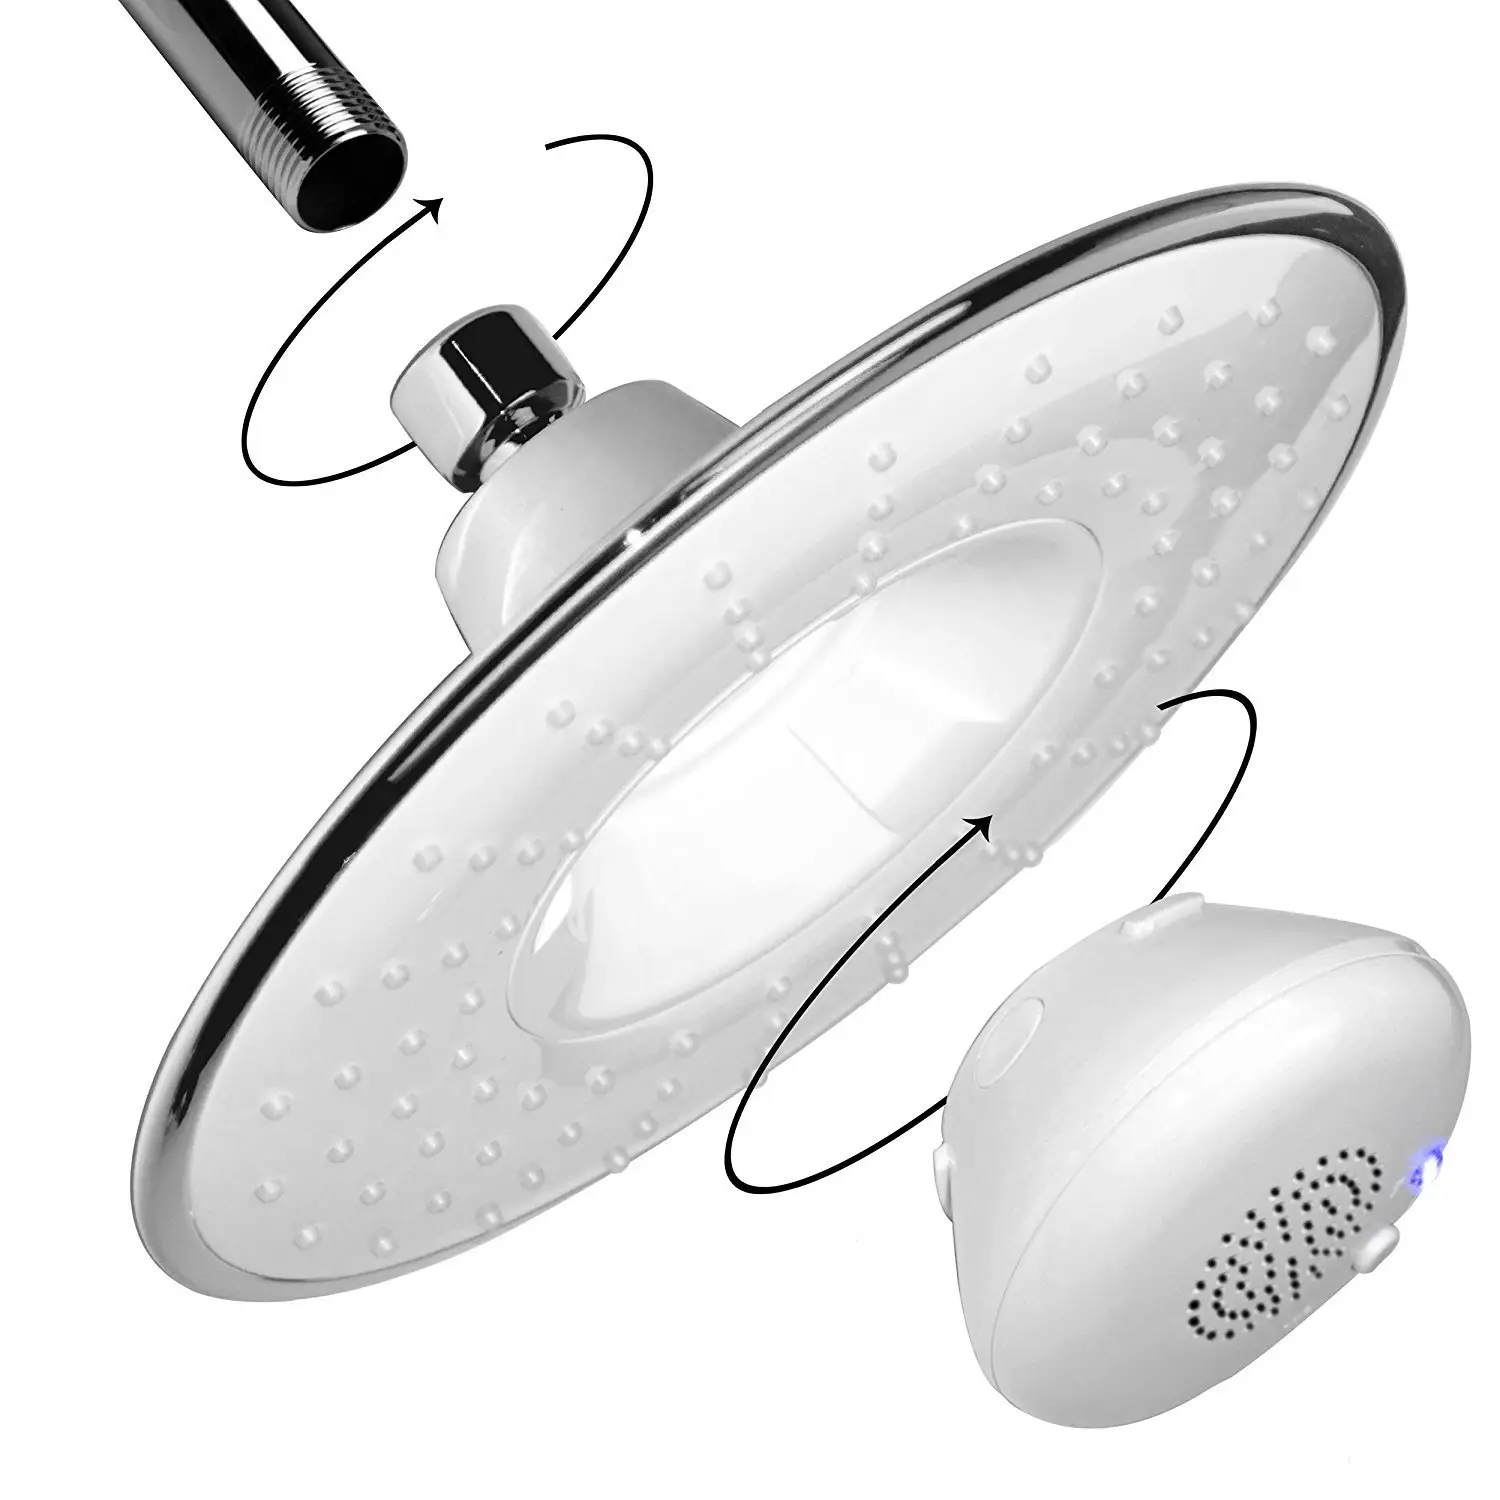 Cabeça de chuveiro grande 8 polegadas cupc, chuveiro de música cabeça à prova d'água para música ou telefone